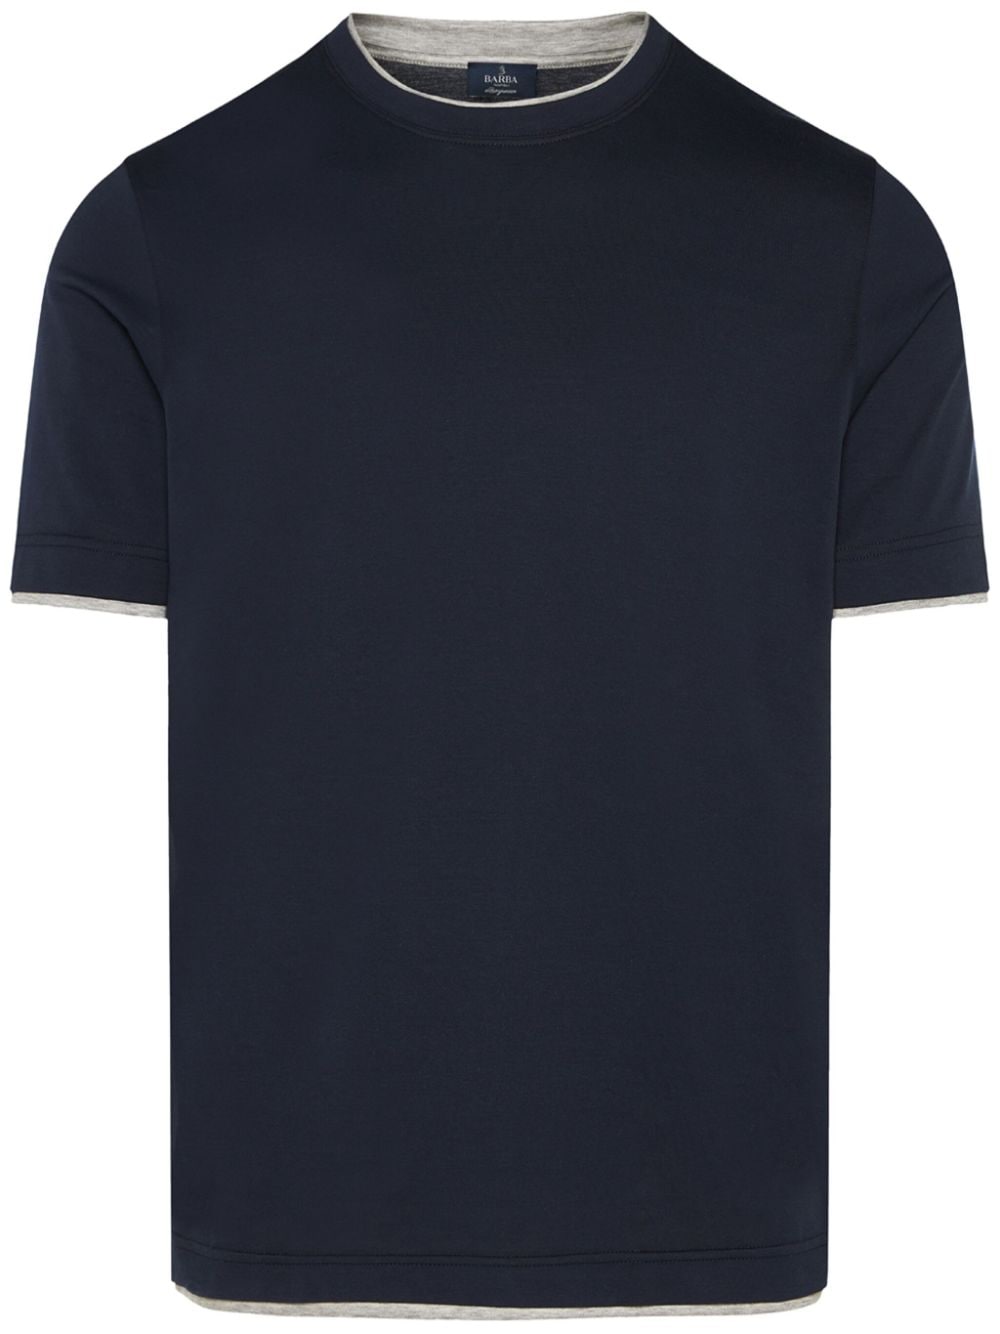 Barba Katoenen T-shirt Blauw